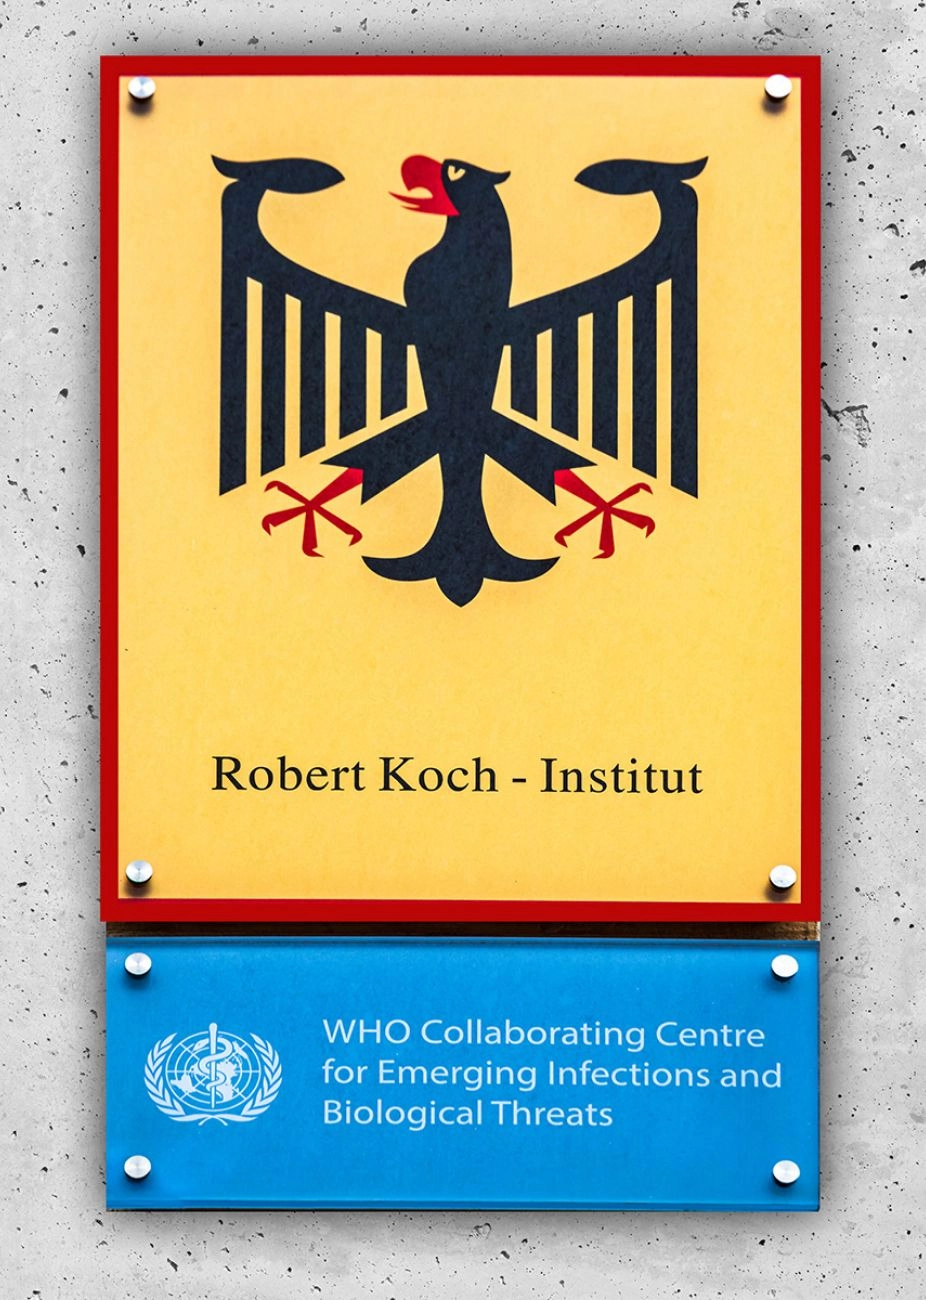 Robert Koch Institure logo